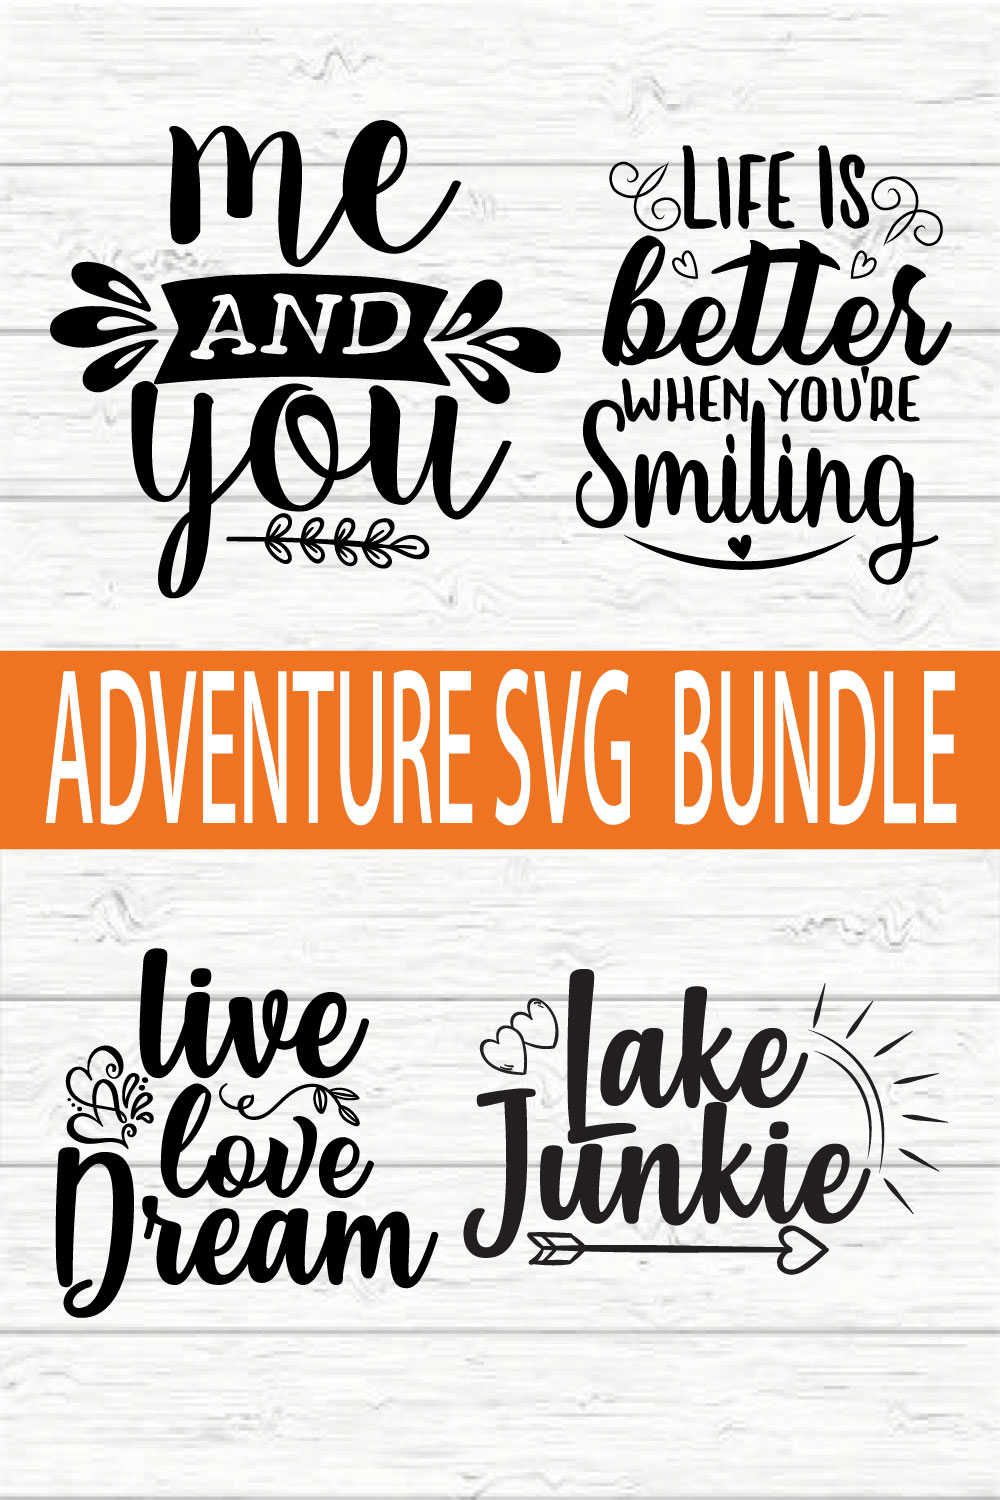 Adventure Design Bundle vol 4 pinterest preview image.